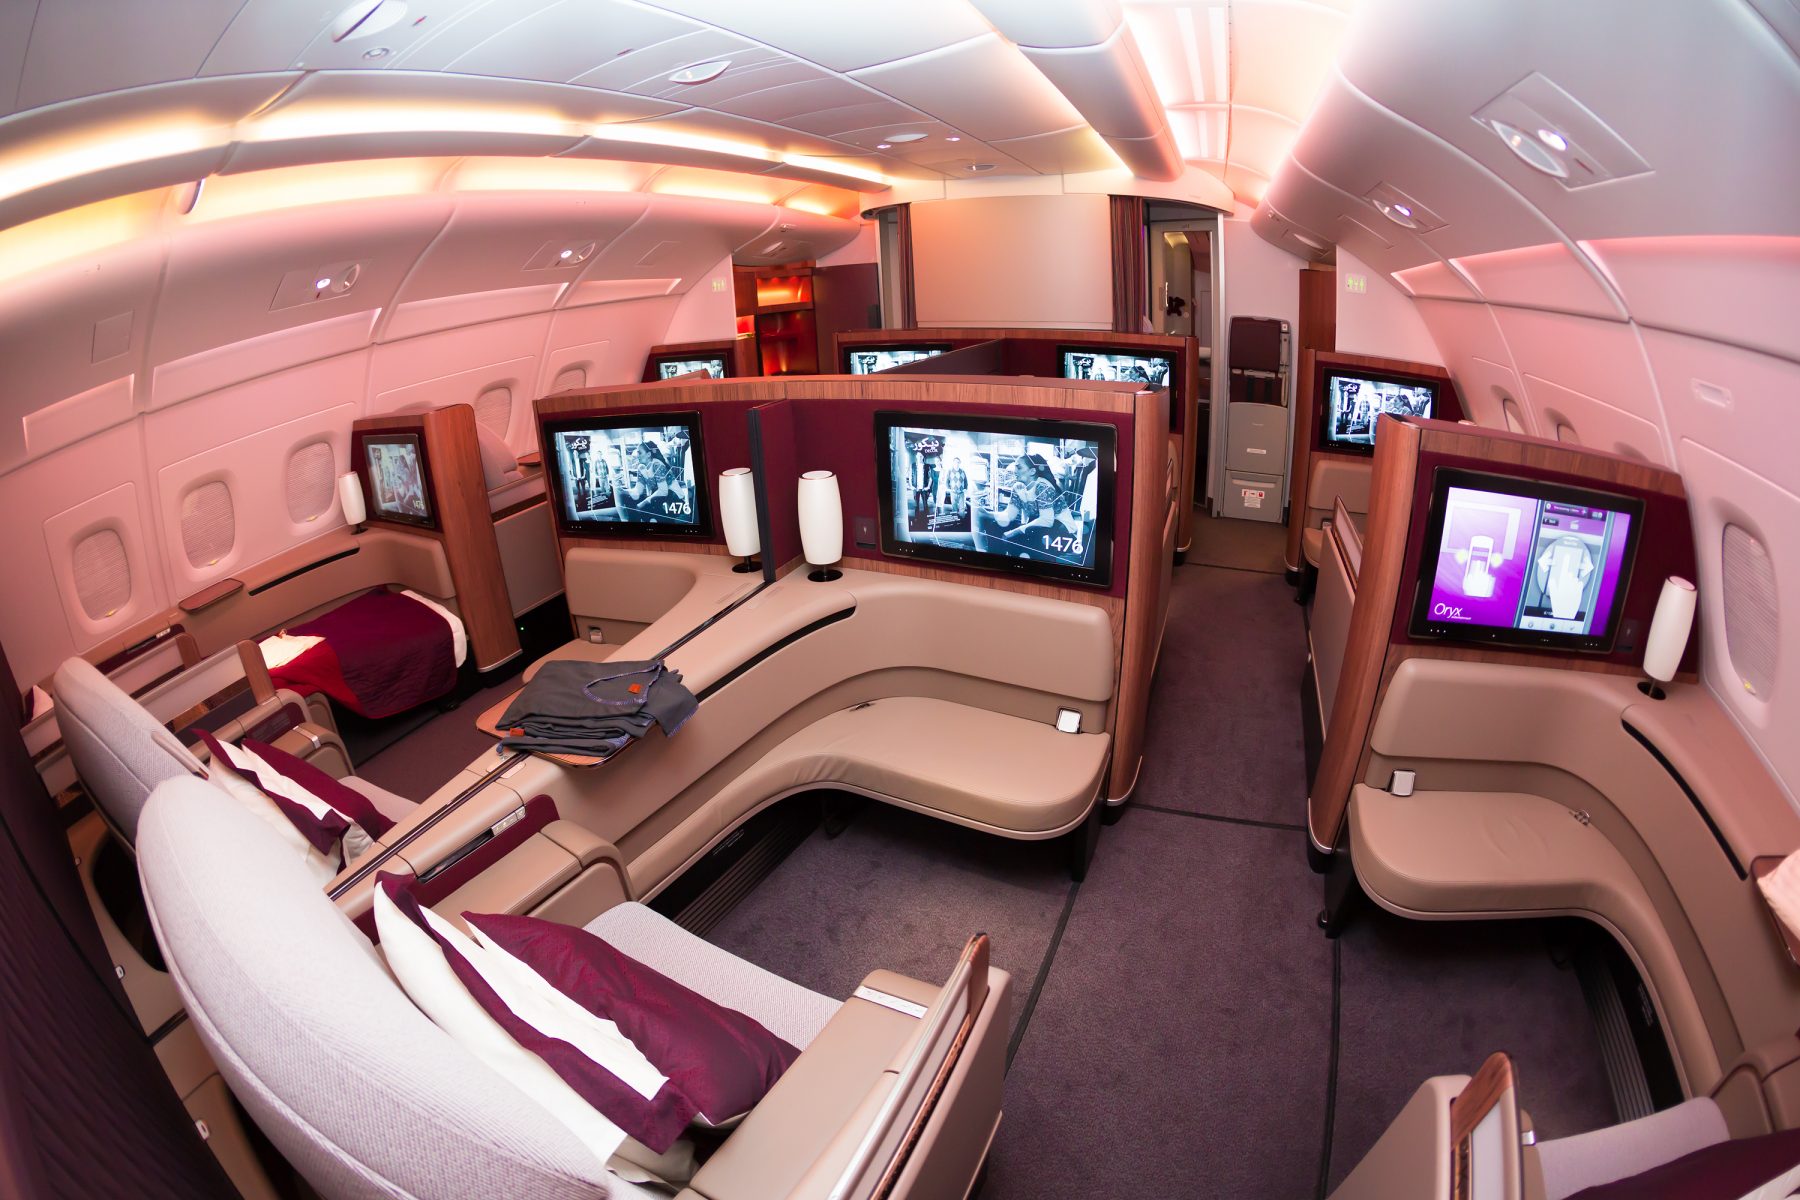 First class going first class. Аэробус а380 Qatar. Airbus a380 Qatar Airways салон. Qatar Airways 1 класс. Airbus a380 first class.